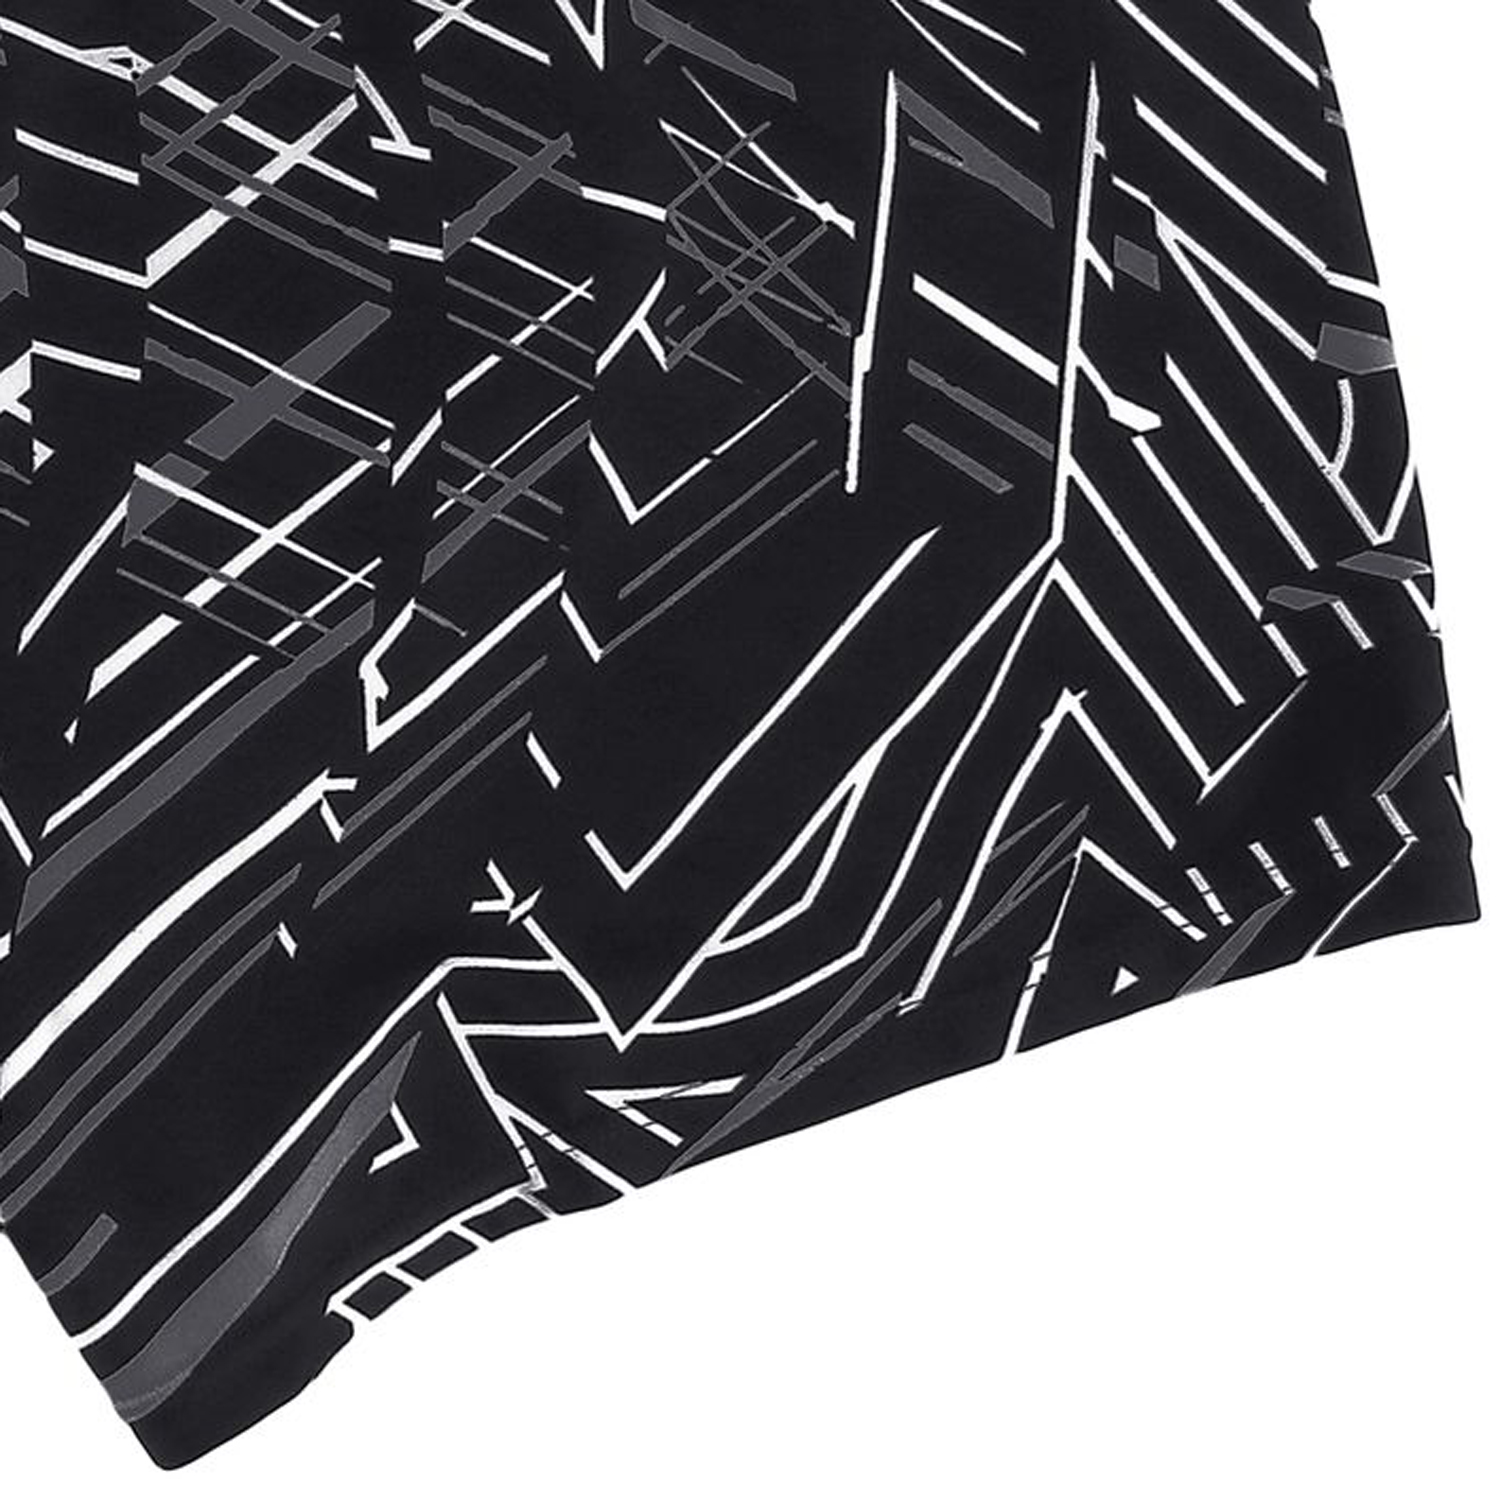 Herren Badehose Schwimmhose Pant von elemar in großen Größen bis 10XL mehrfarbig in schwarz-weiß